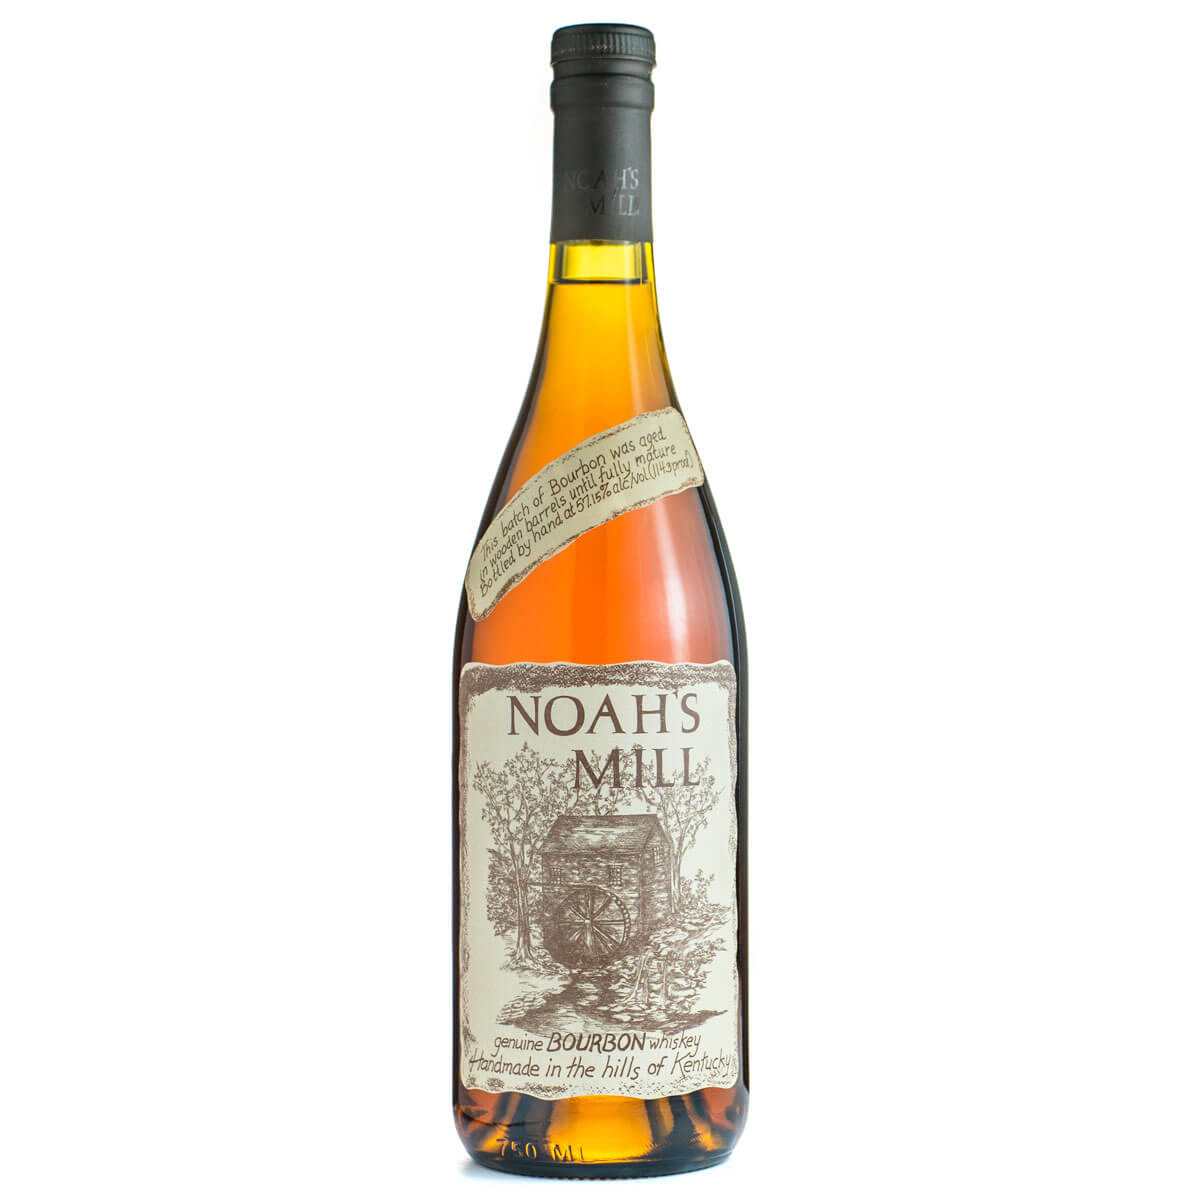 Noah's Mill bourbon bottle